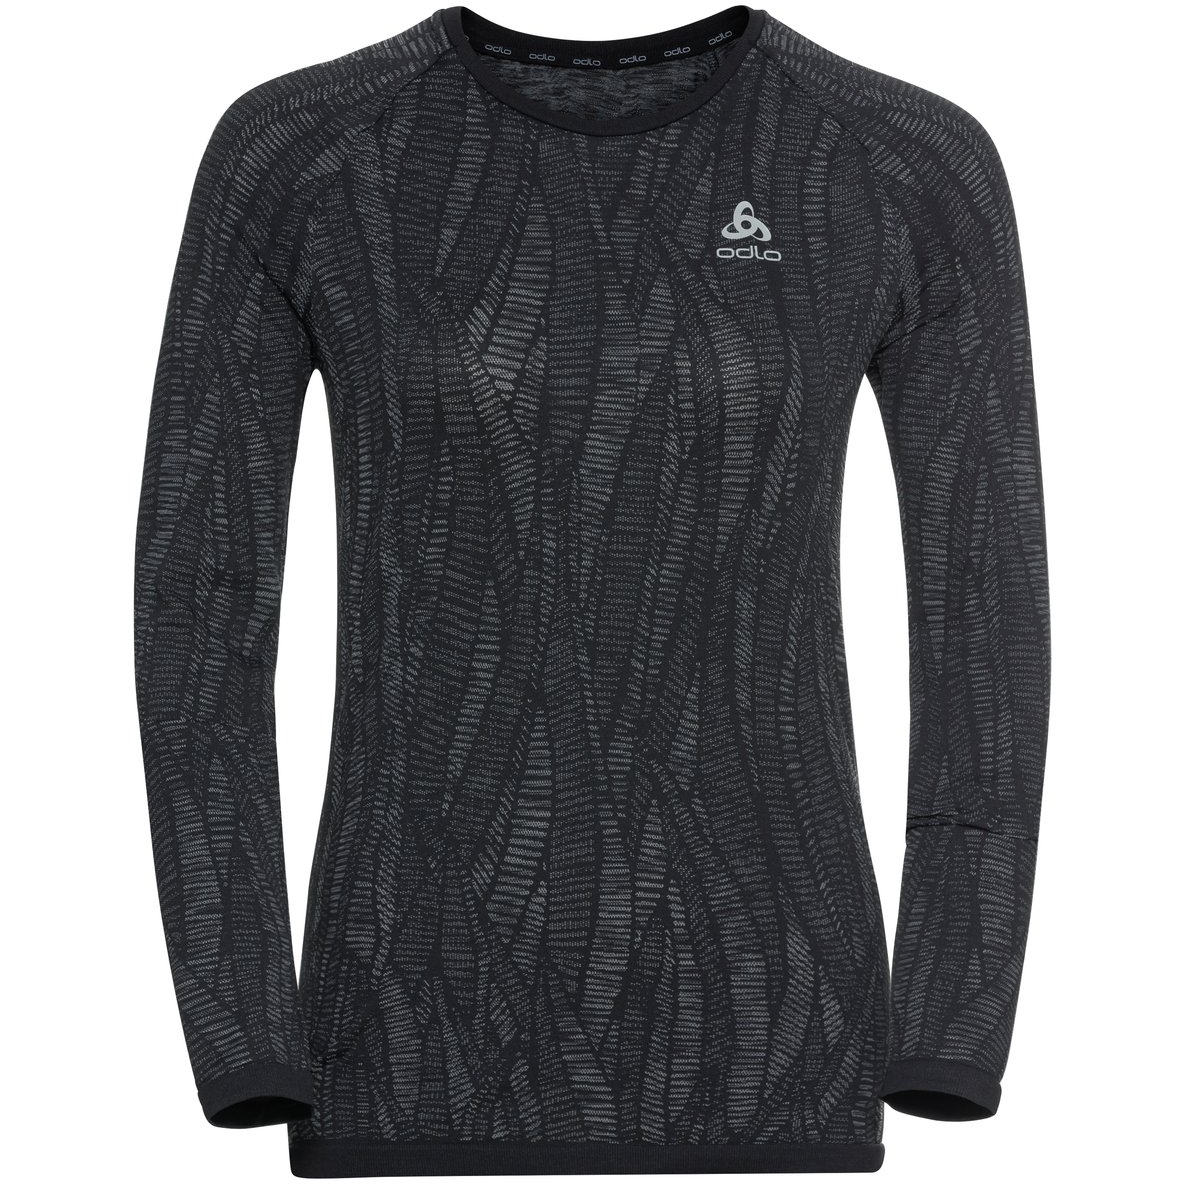 Produktbild von Odlo Blackcomb Light Langarm-Unterhemd Damen - black - space dye